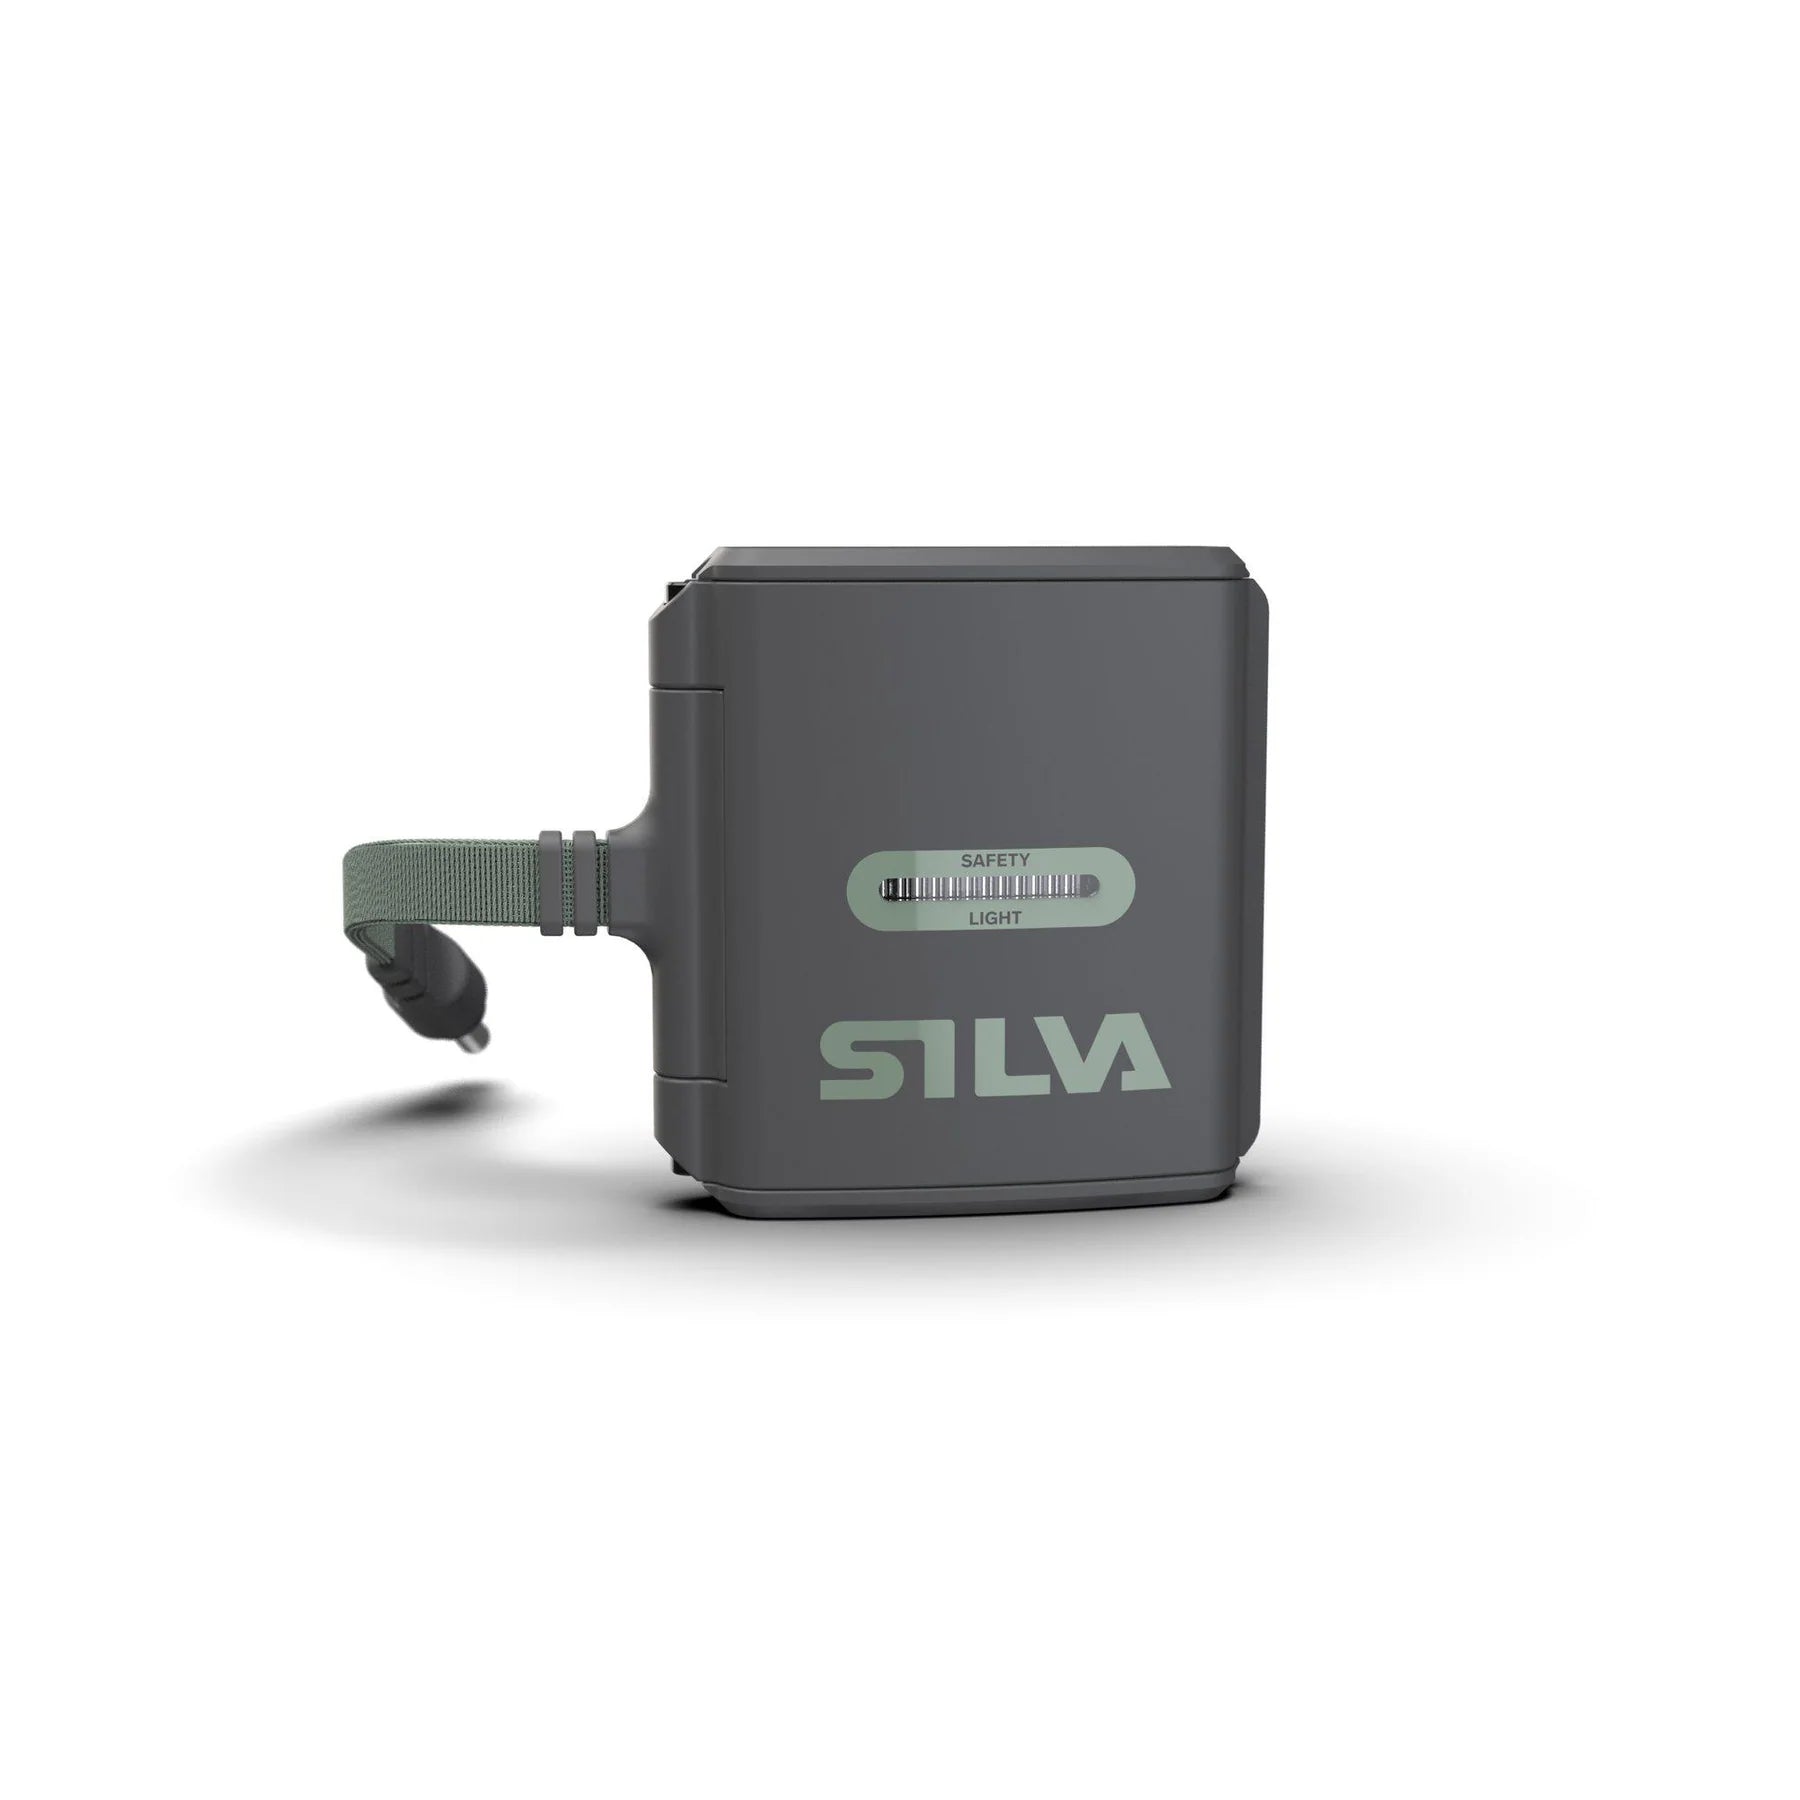 SILVA Trail Runner Free 2 Hybrid Loop